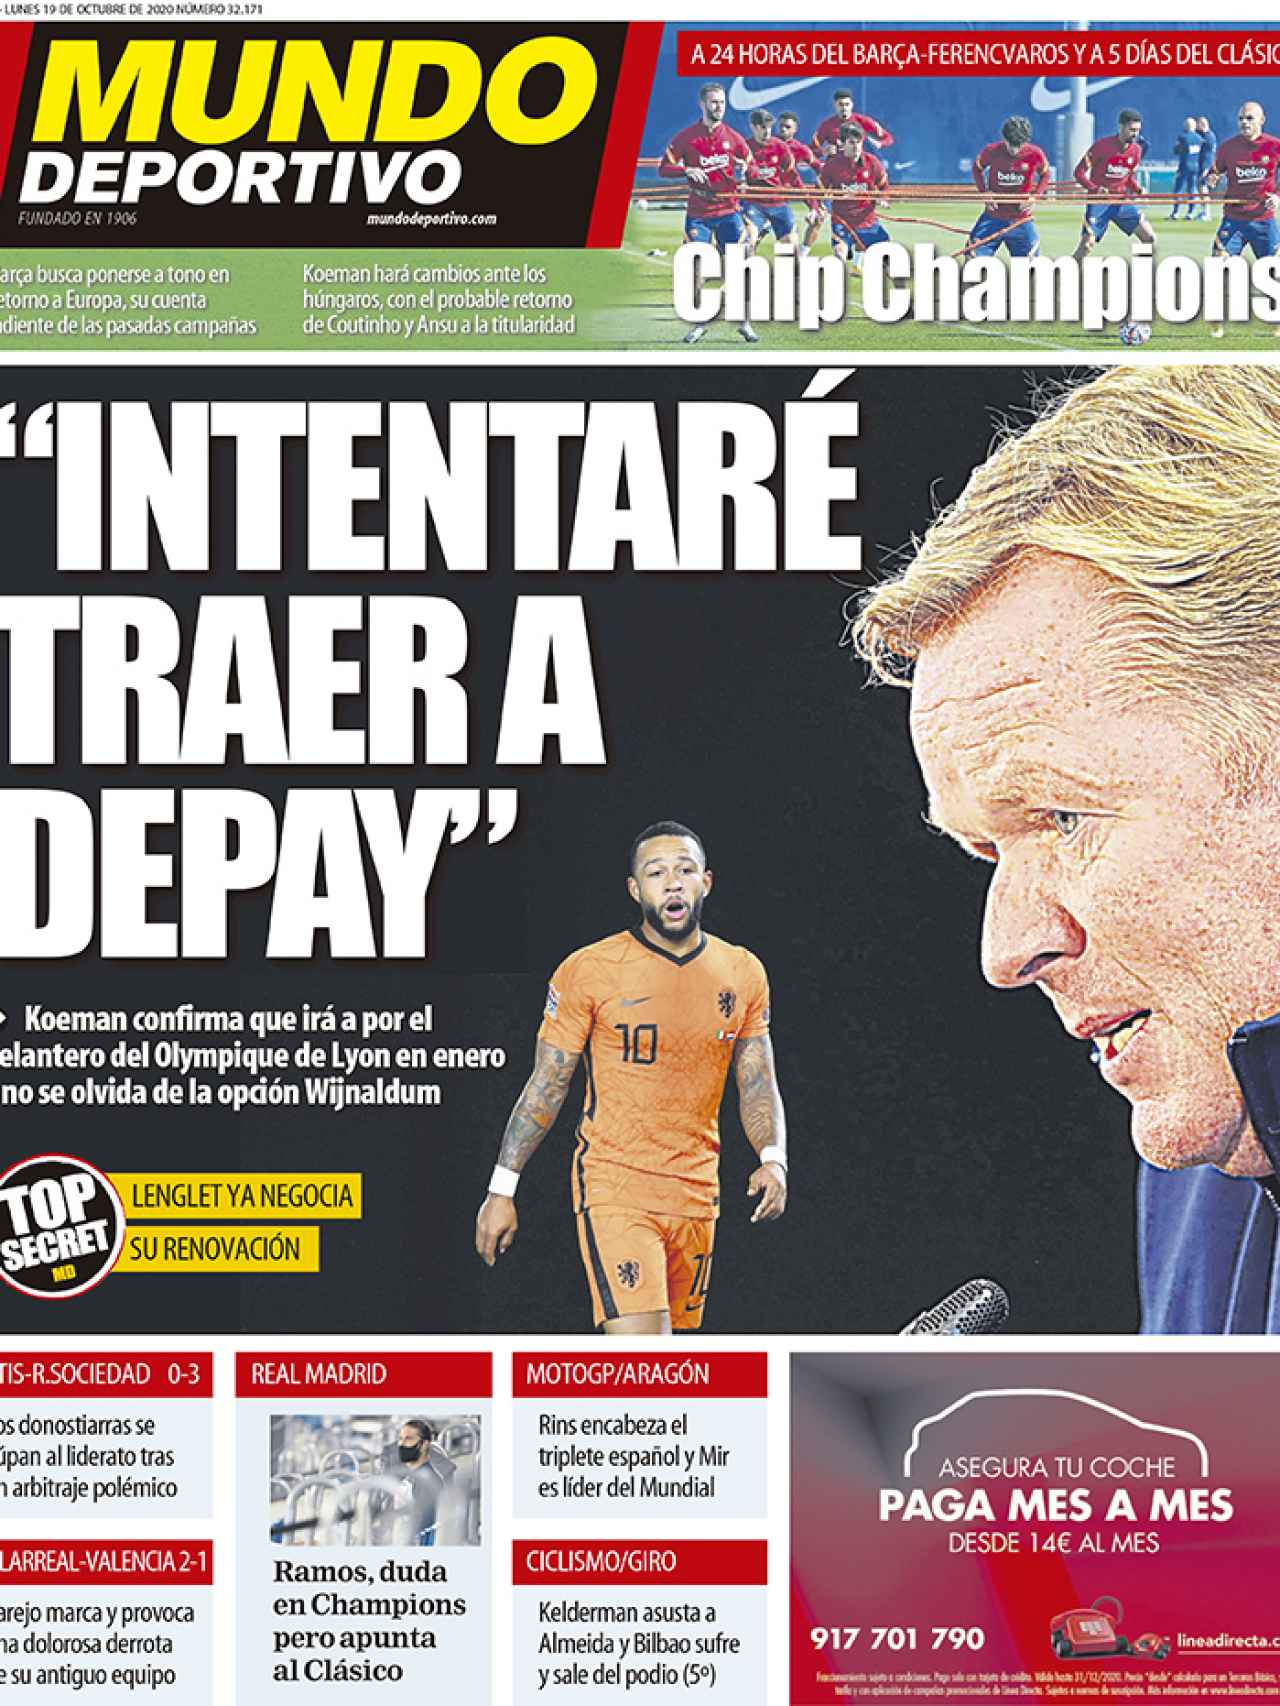 La portada del diario Mundo Deportivo (19:10:2020)